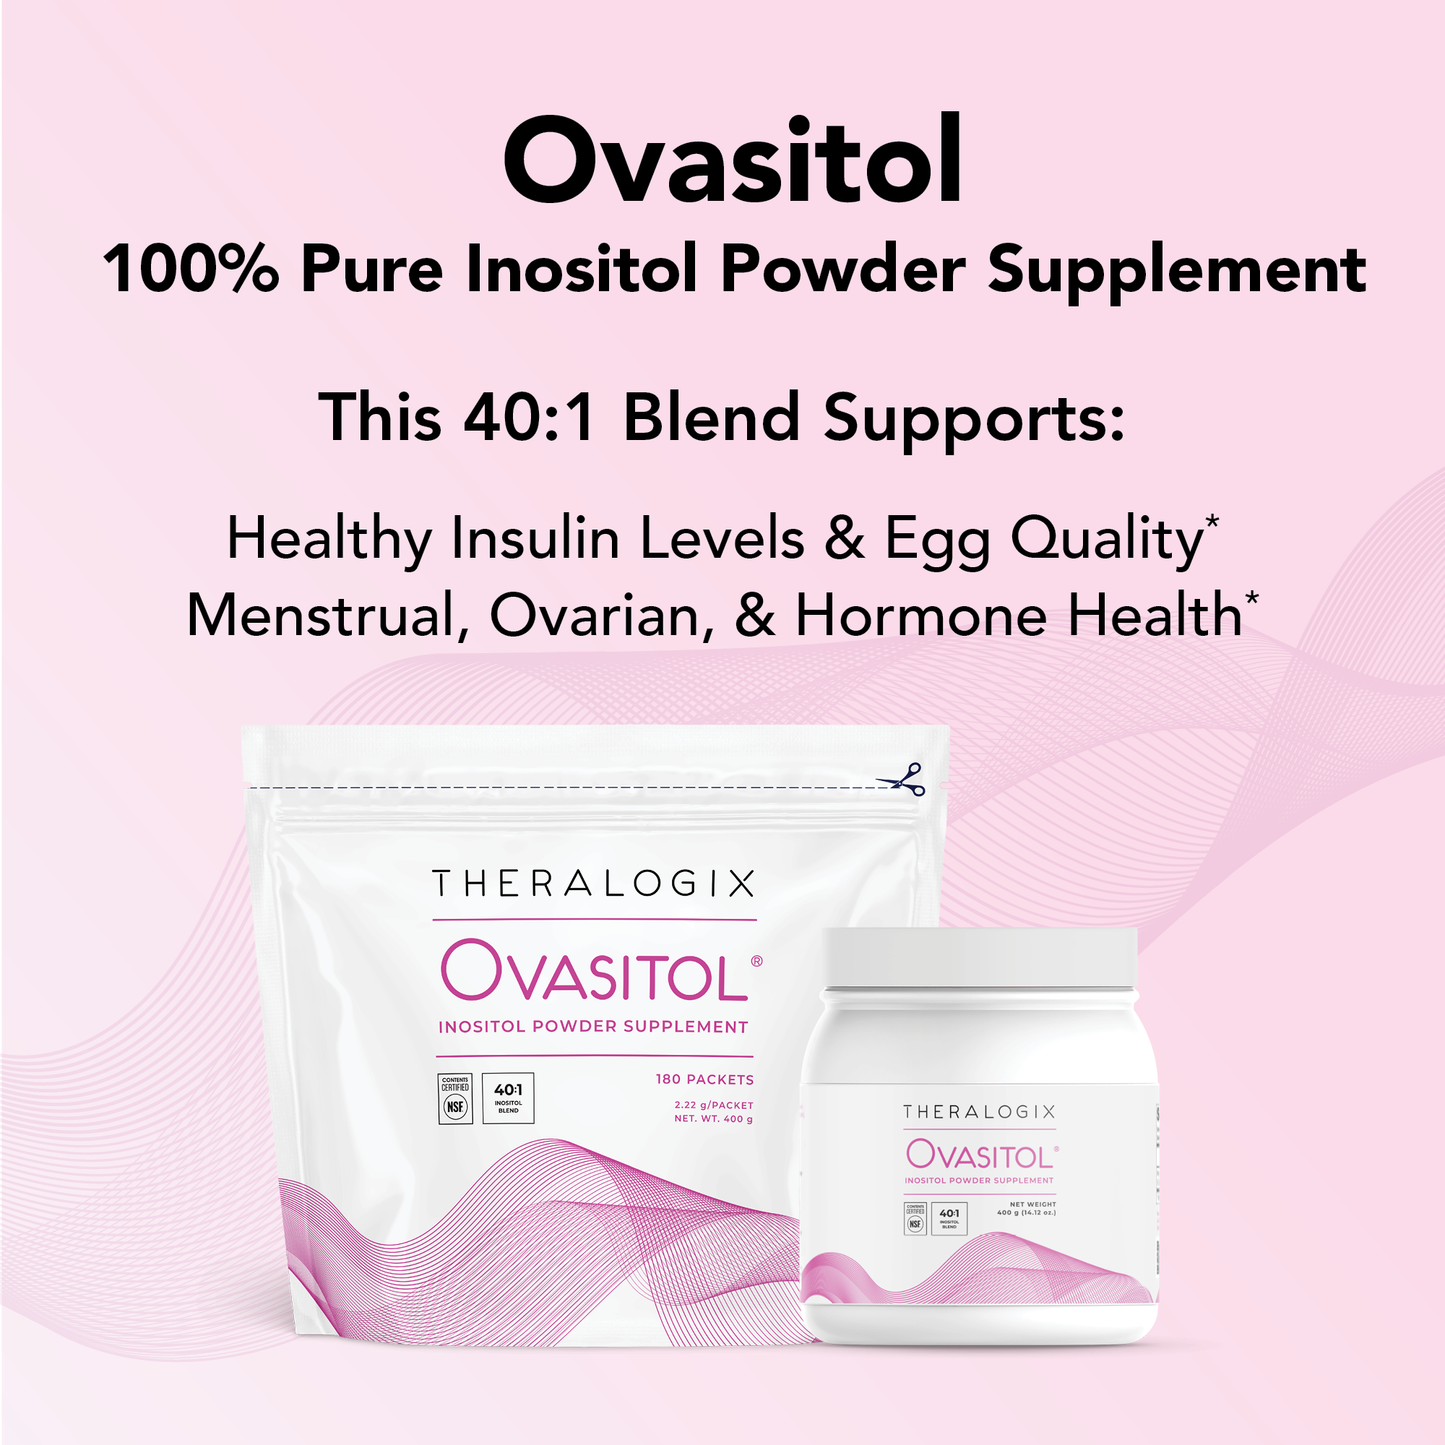 Ovasitol® Inositol Powder Supplement